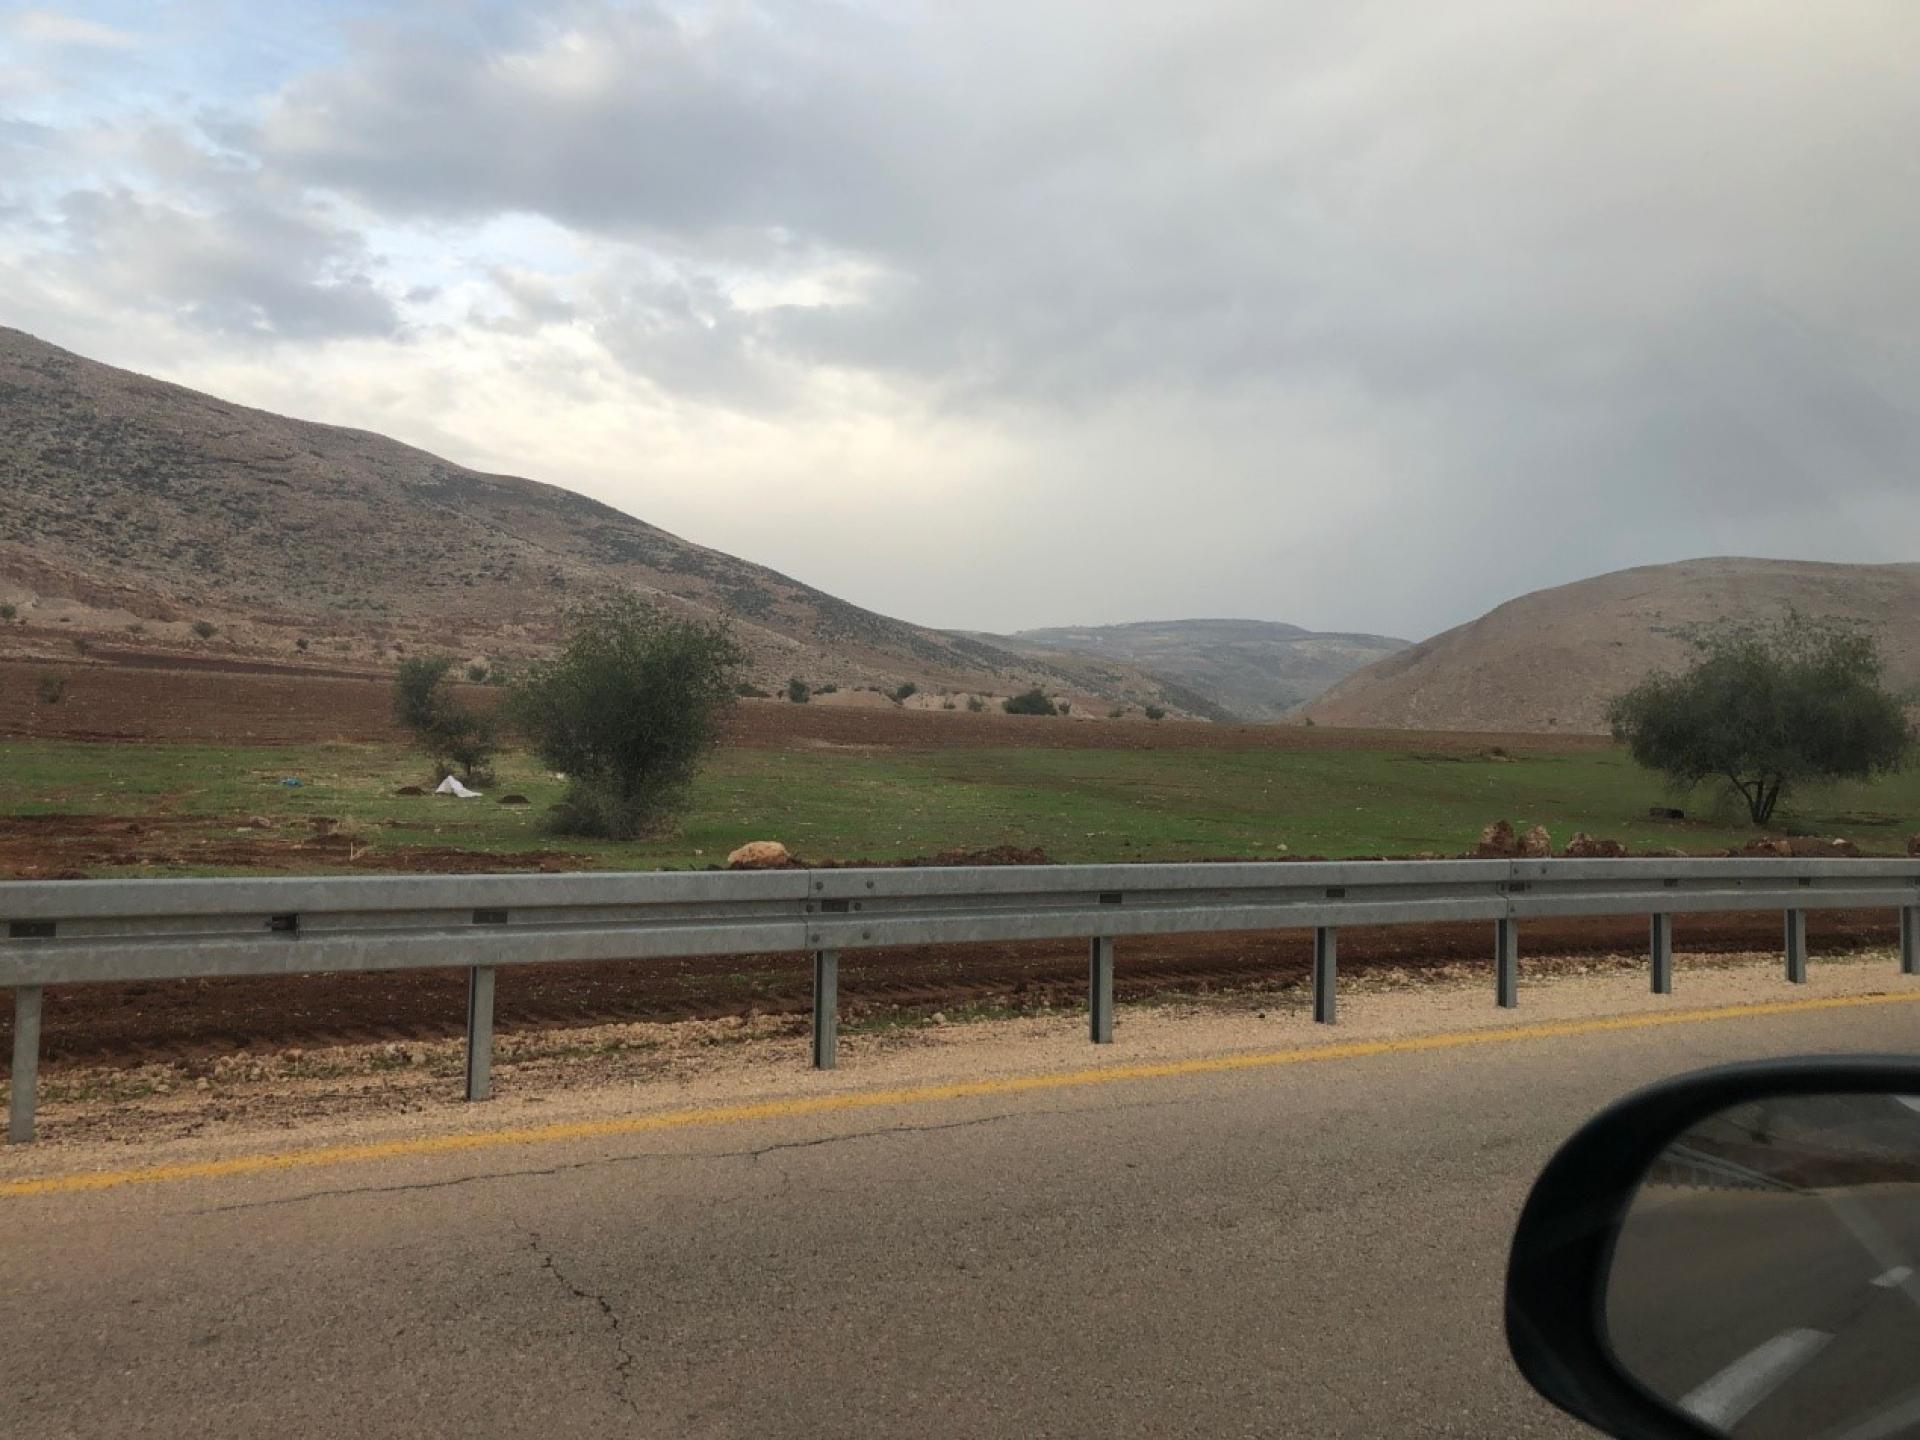 בקעת הירדן - יום גשום לפרקים, ההרים החלו להוריק, אפשר לצאת עם הצאן למרעה